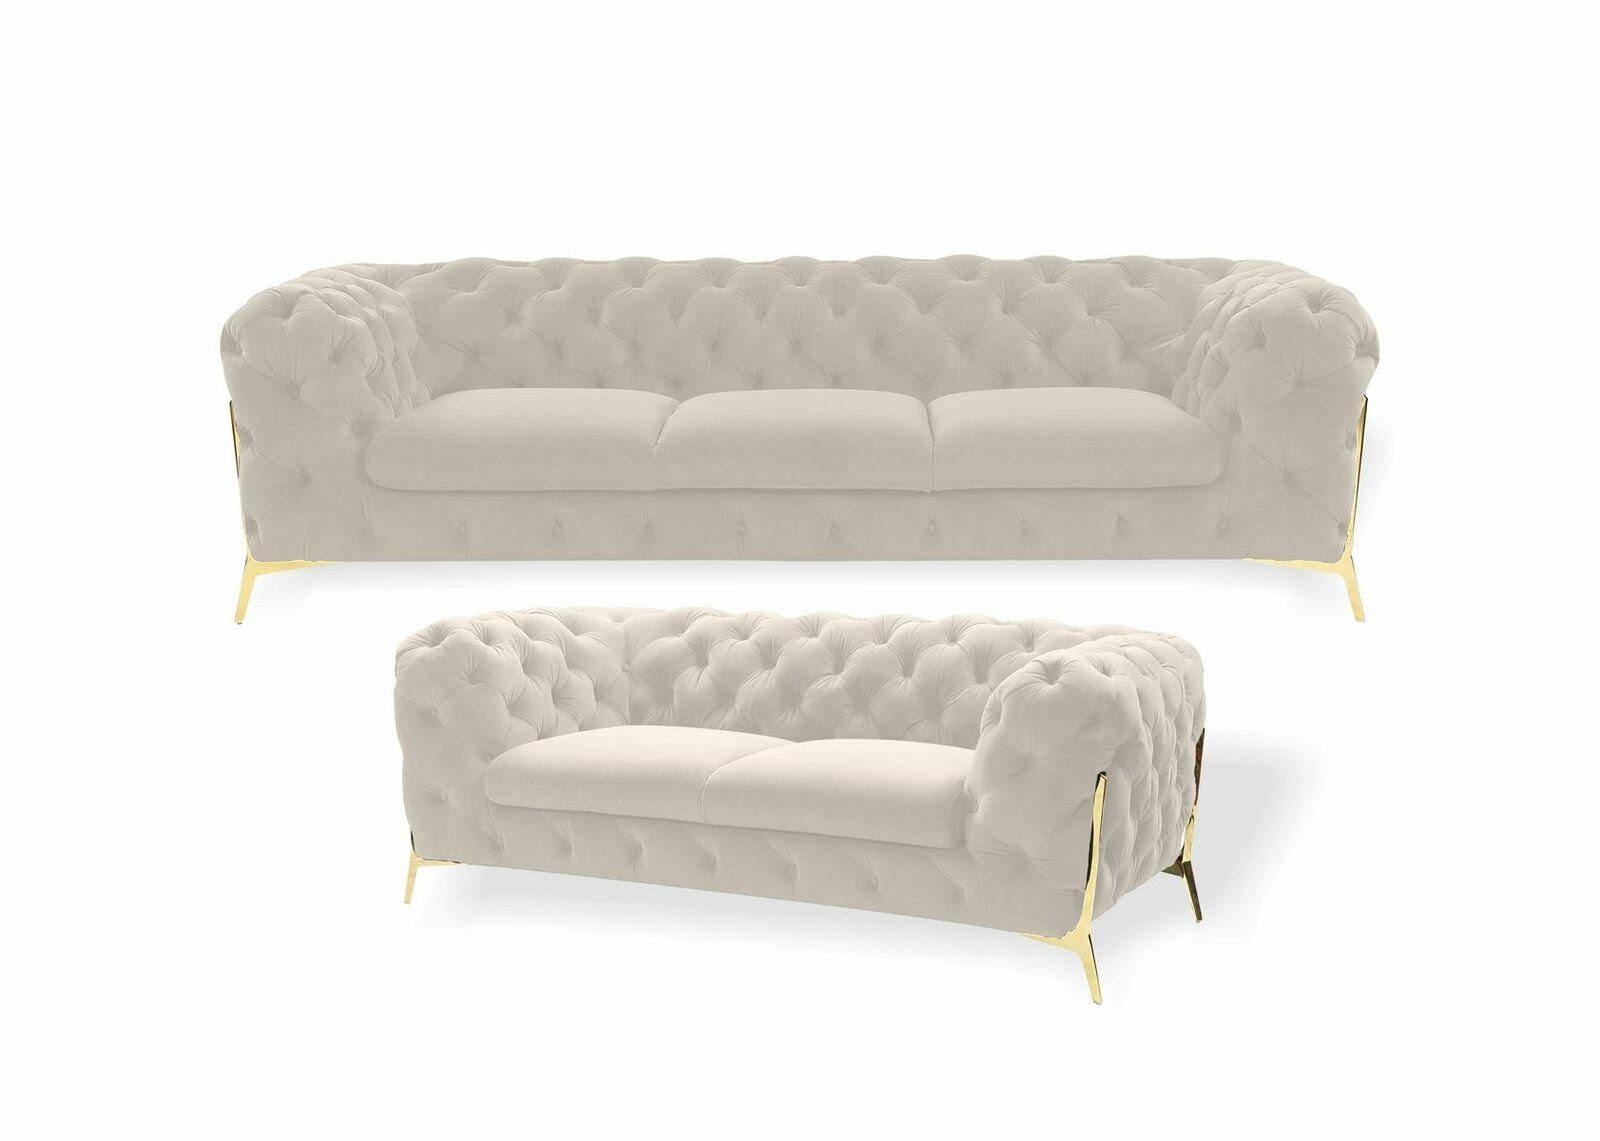 JVmoebel Sofa Blaue Luxus Moderne Chesterfield Couchgarnitur 3+2 Sitzer Neu, Made in Europe Weiß